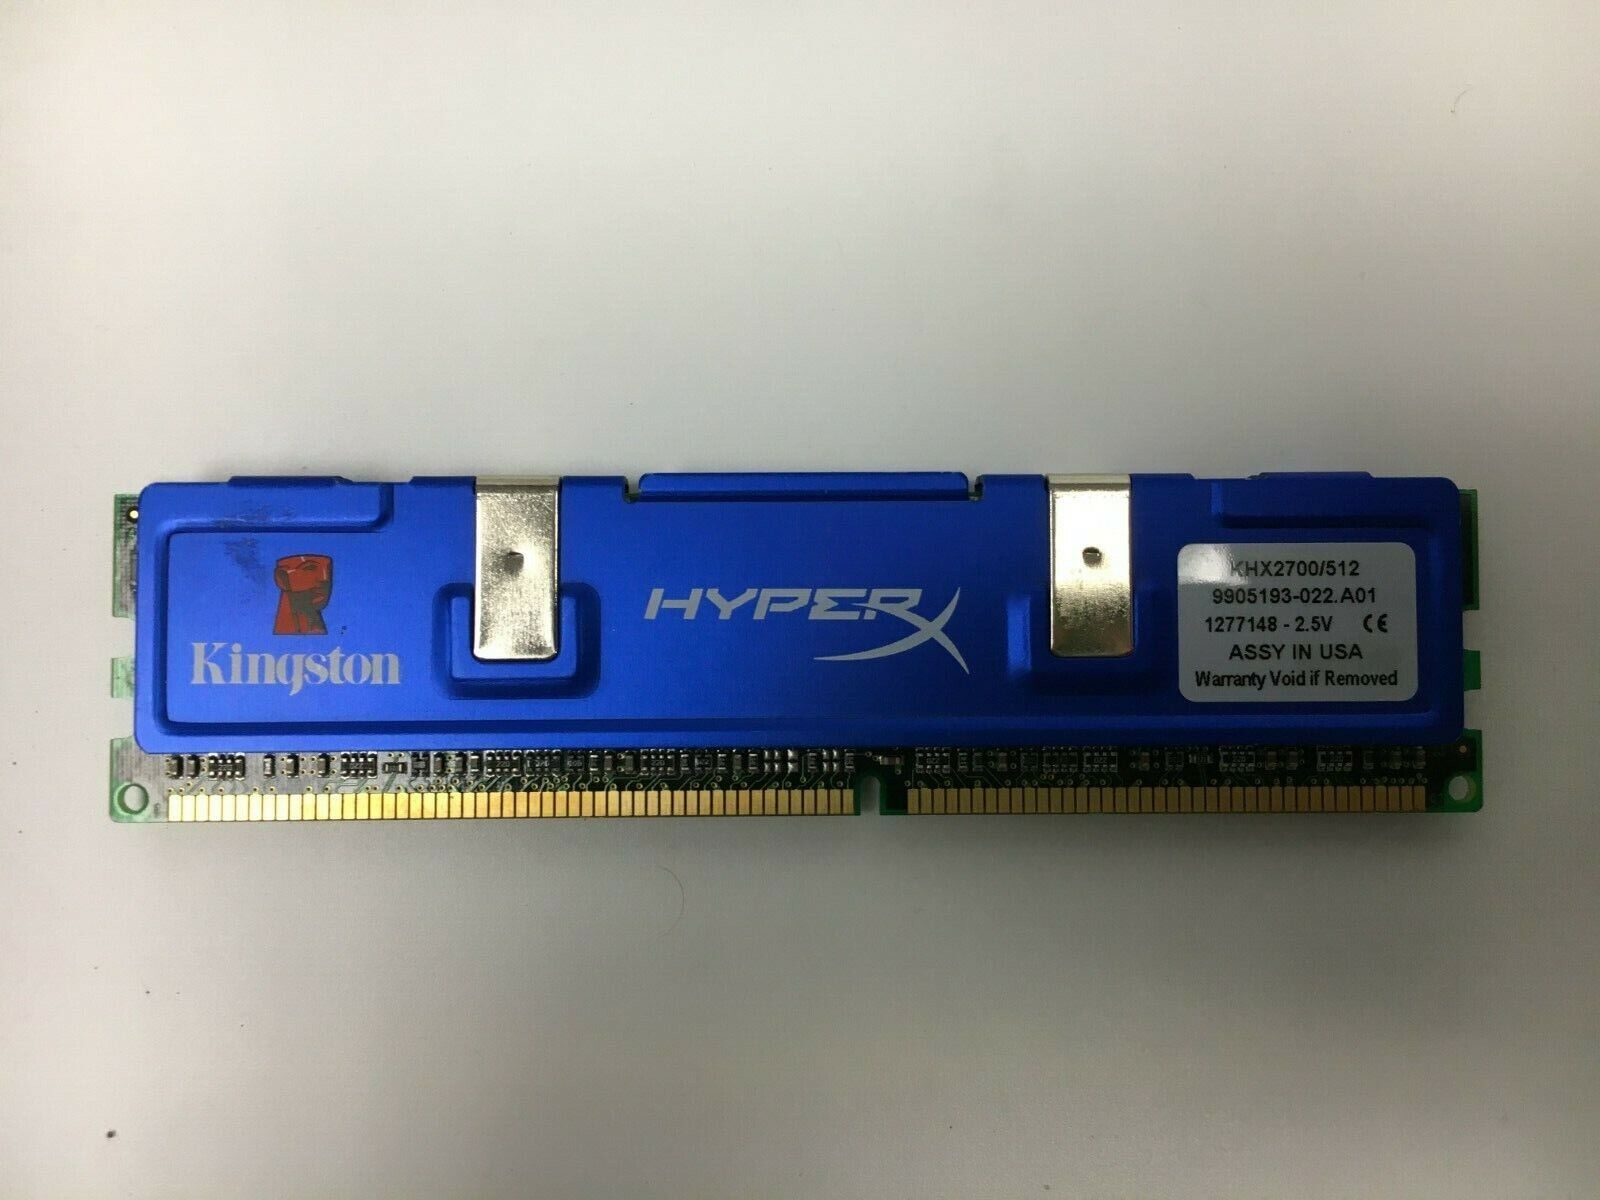 KHX2700/512 Kingston HyperX 512MB Kit (1 X 512MB) 